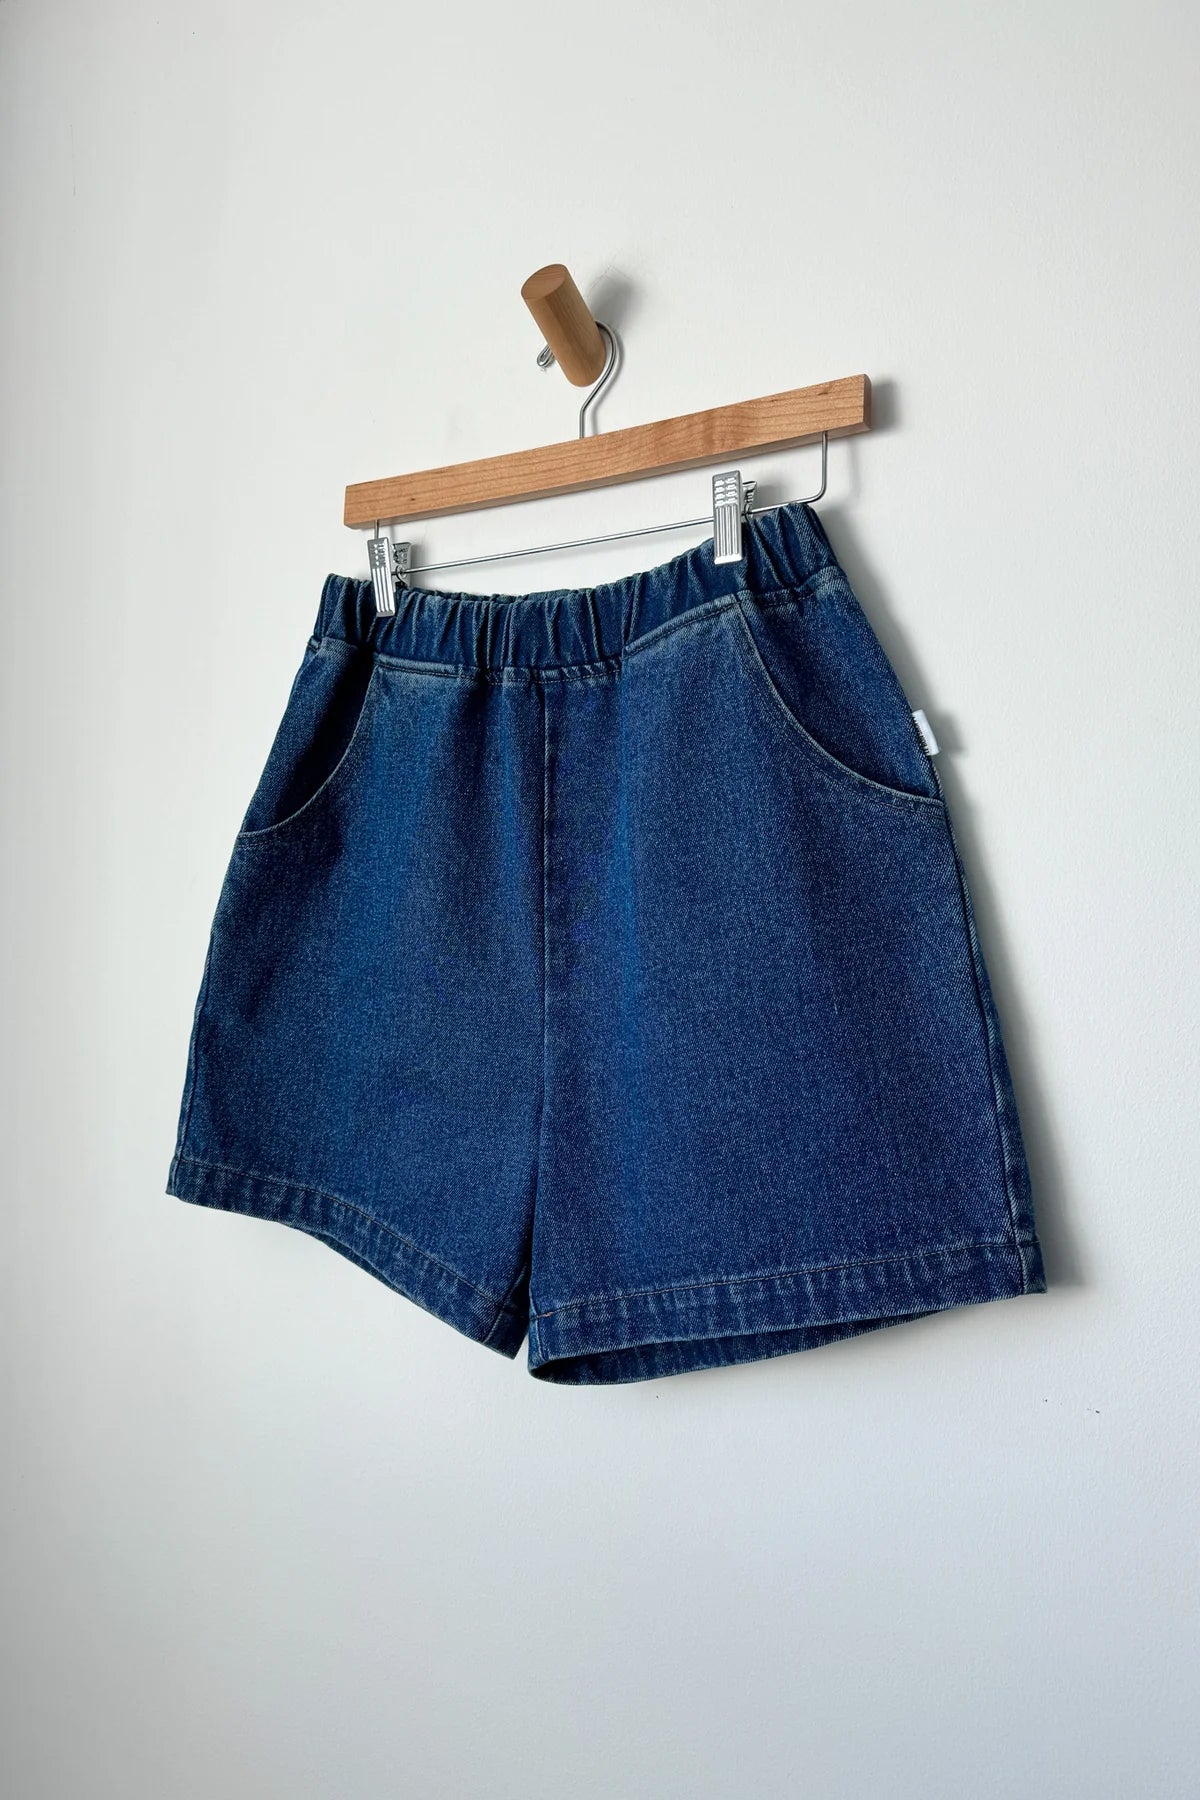 Le Bon Shoppe | City Shorts - Blue Denim